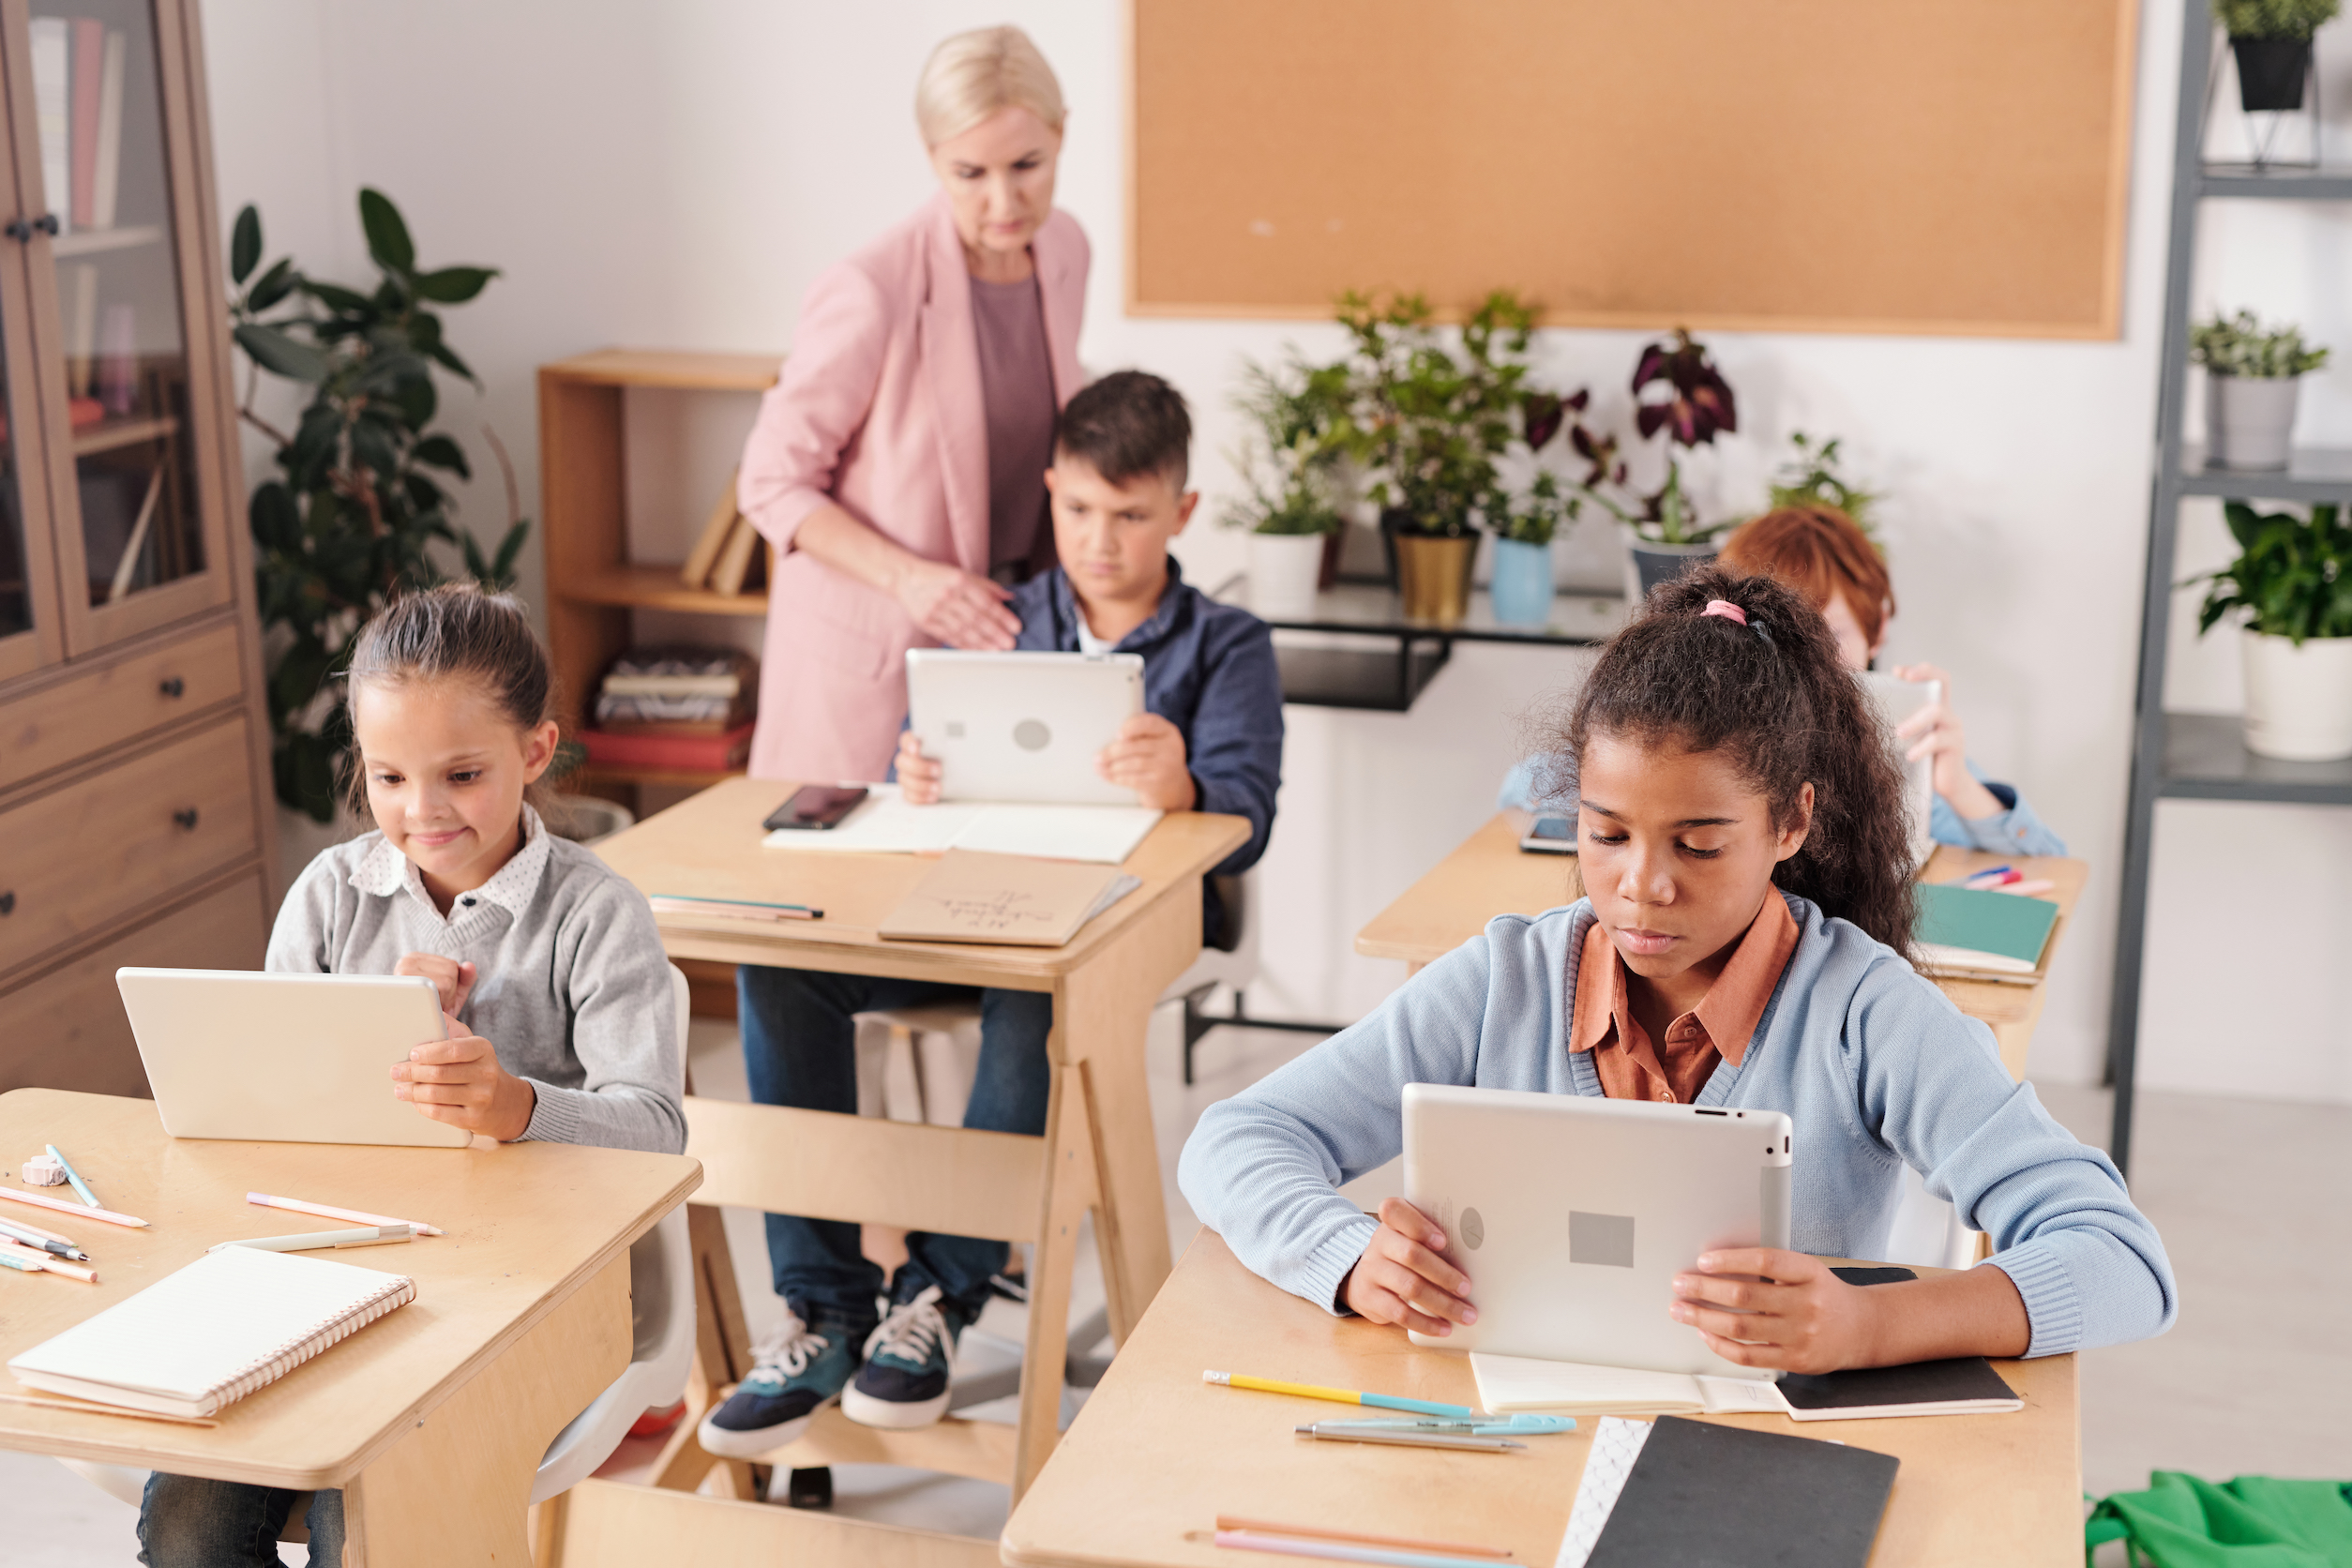 Groupe d'écoliers contemporains avec des tablettes, assis à des bureaux sur deux rangées, utilisant des outils d'évaluation éducative et des outils technologiques éducatifs comme des tablettes, tandis que l'enseignant consulte l'un d'entre eux.